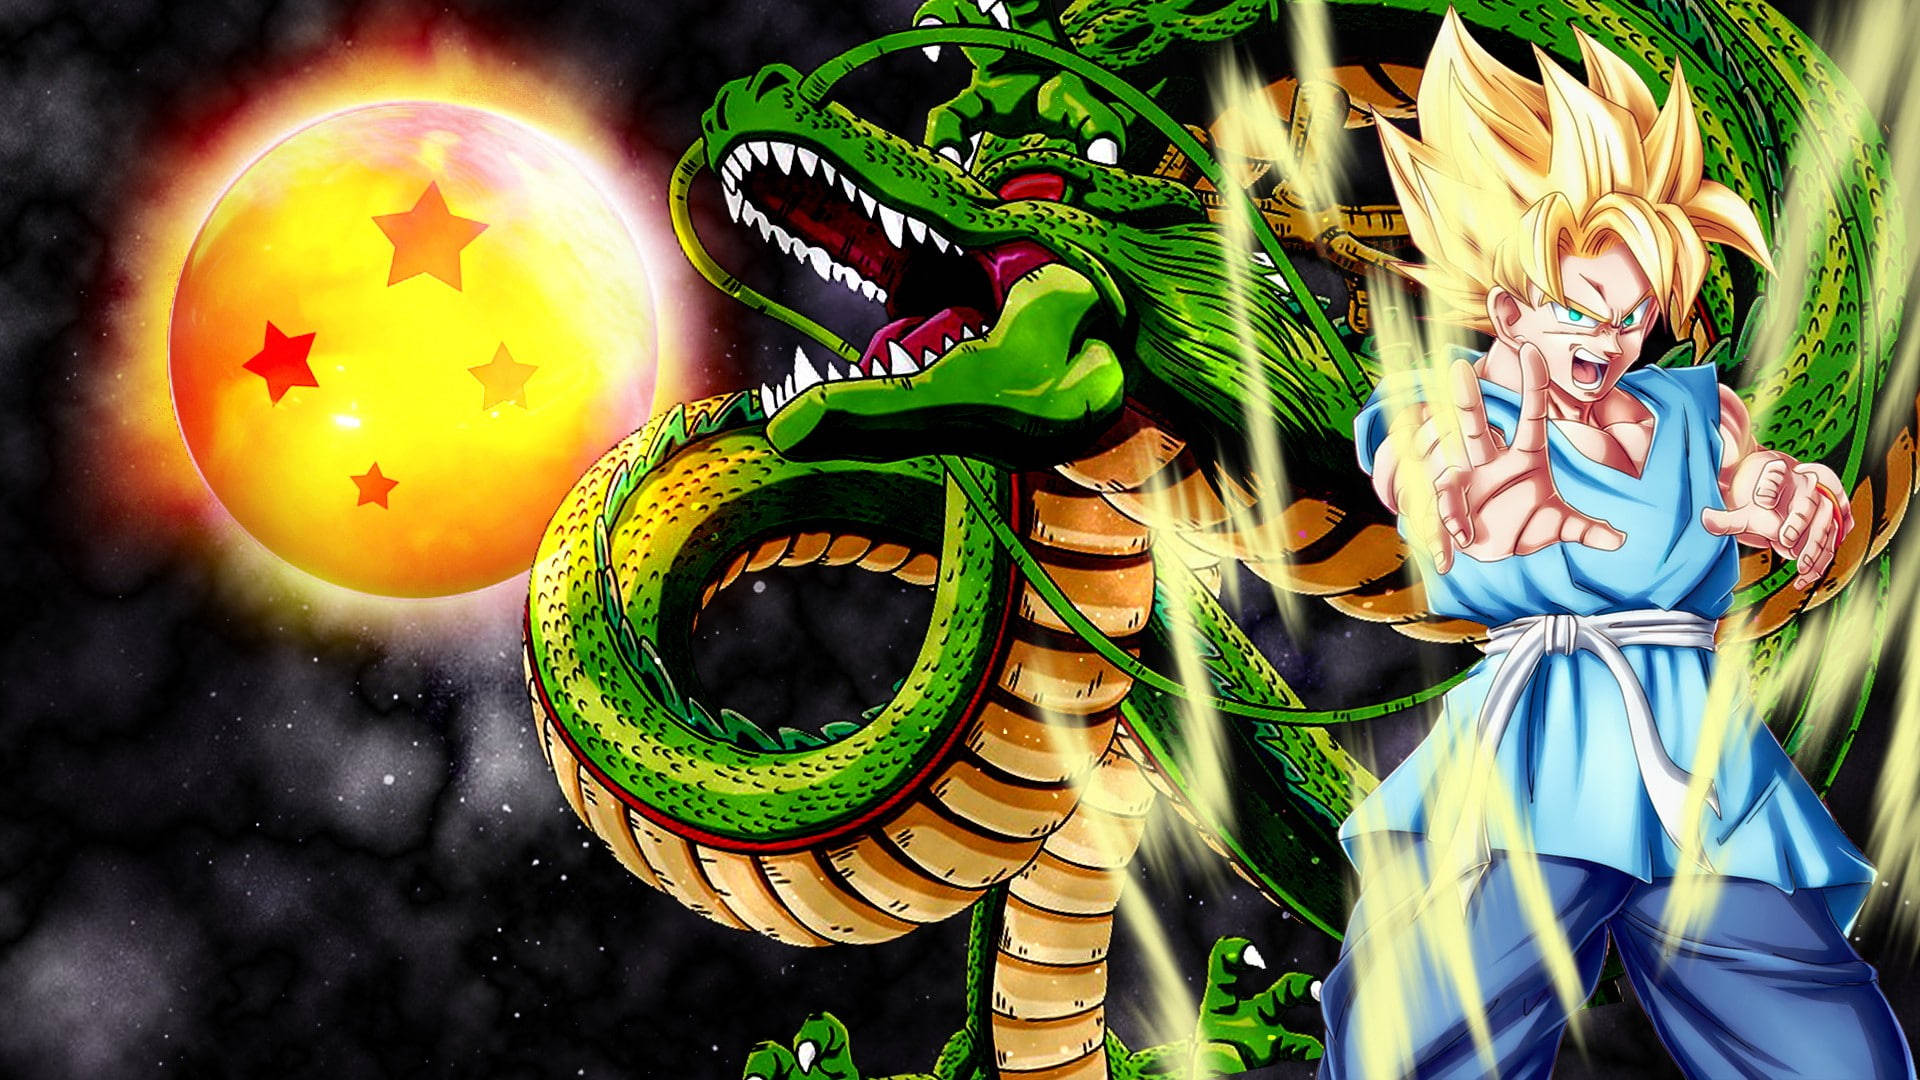 Goku And Green Dragon